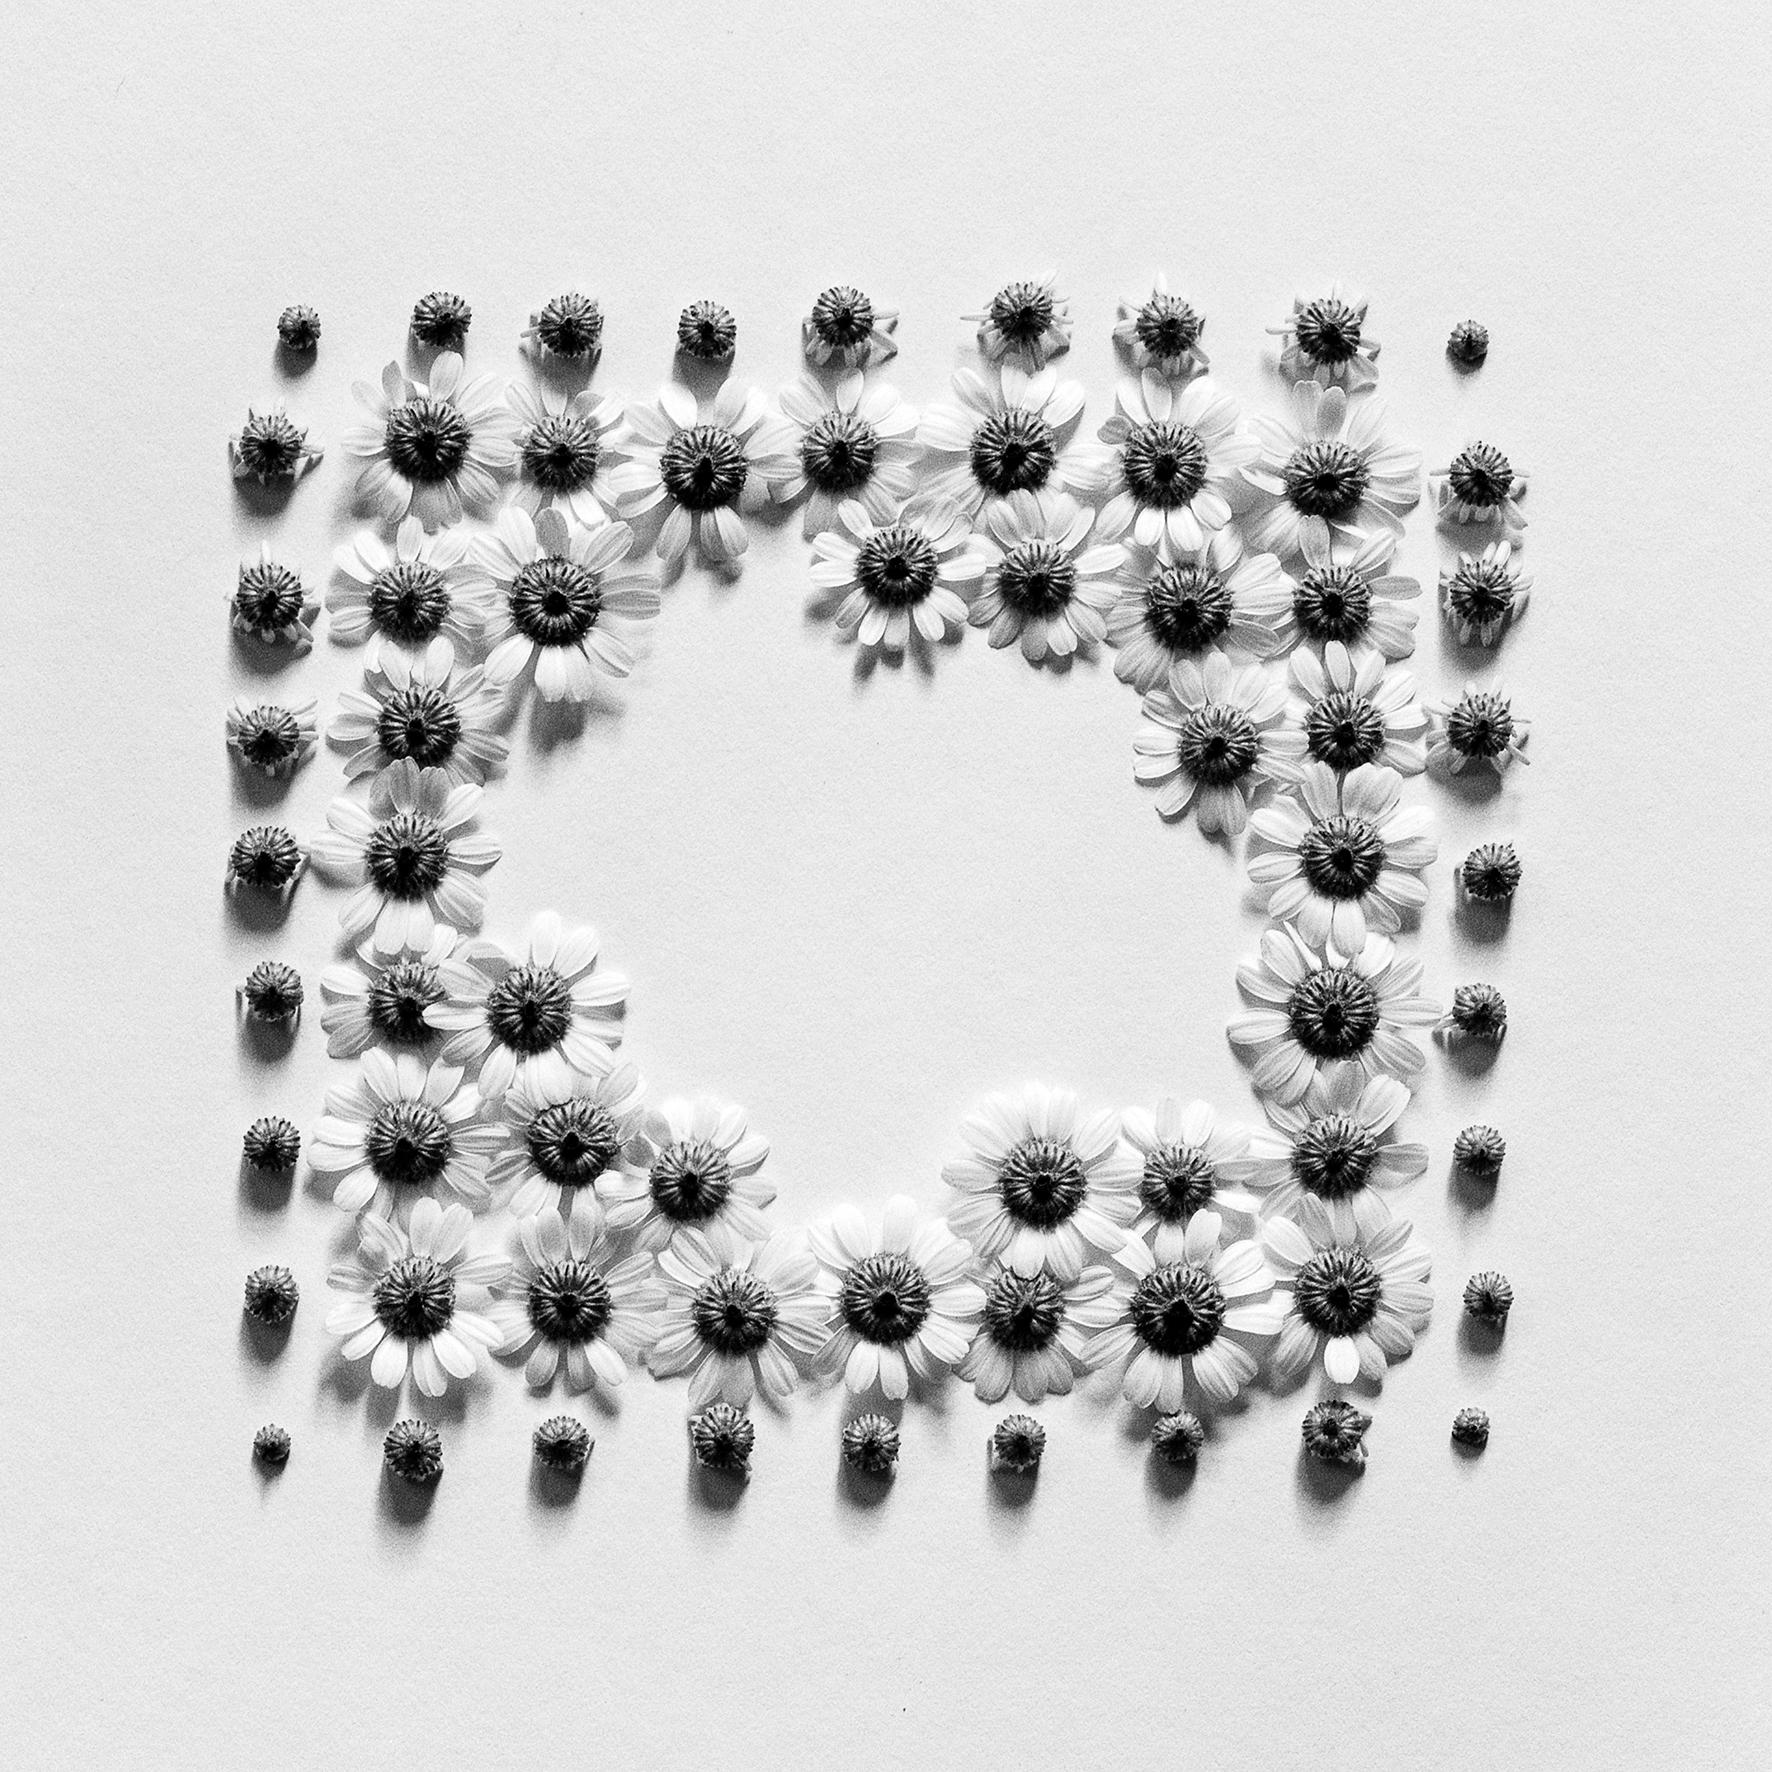 Ramunės - photographie florale analogique abstraite en noir et blanc, Whiting. 20